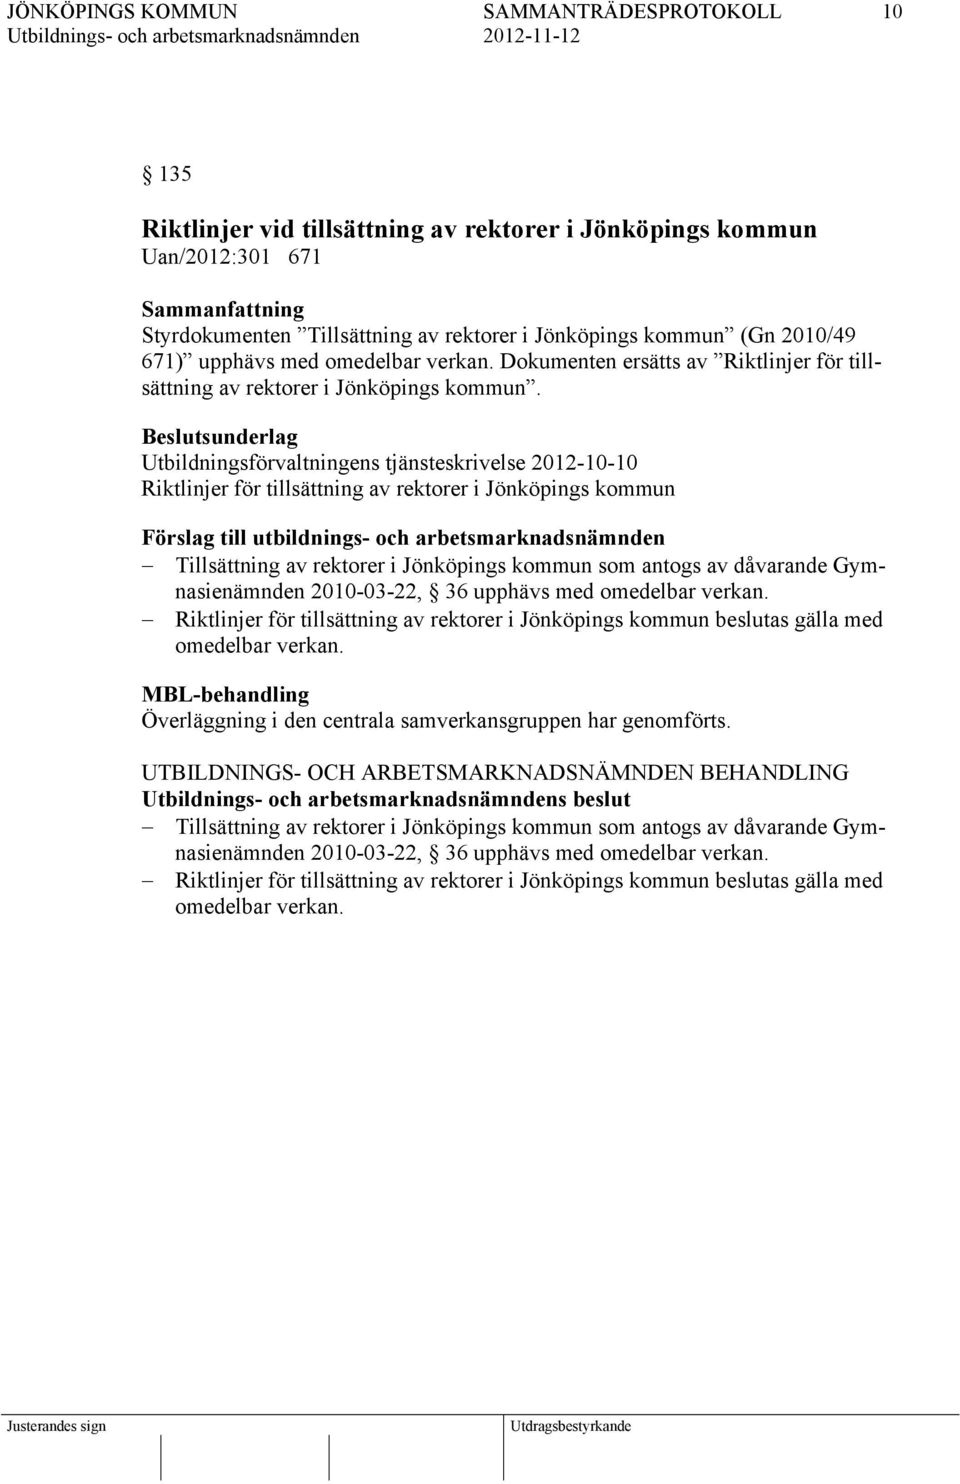 Beslutsunderlag Utbildningsförvaltningens tjänsteskrivelse 2012-10-10 Riktlinjer för tillsättning av rektorer i Jönköpings kommun Förslag till utbildnings- och arbetsmarknadsnämnden Tillsättning av